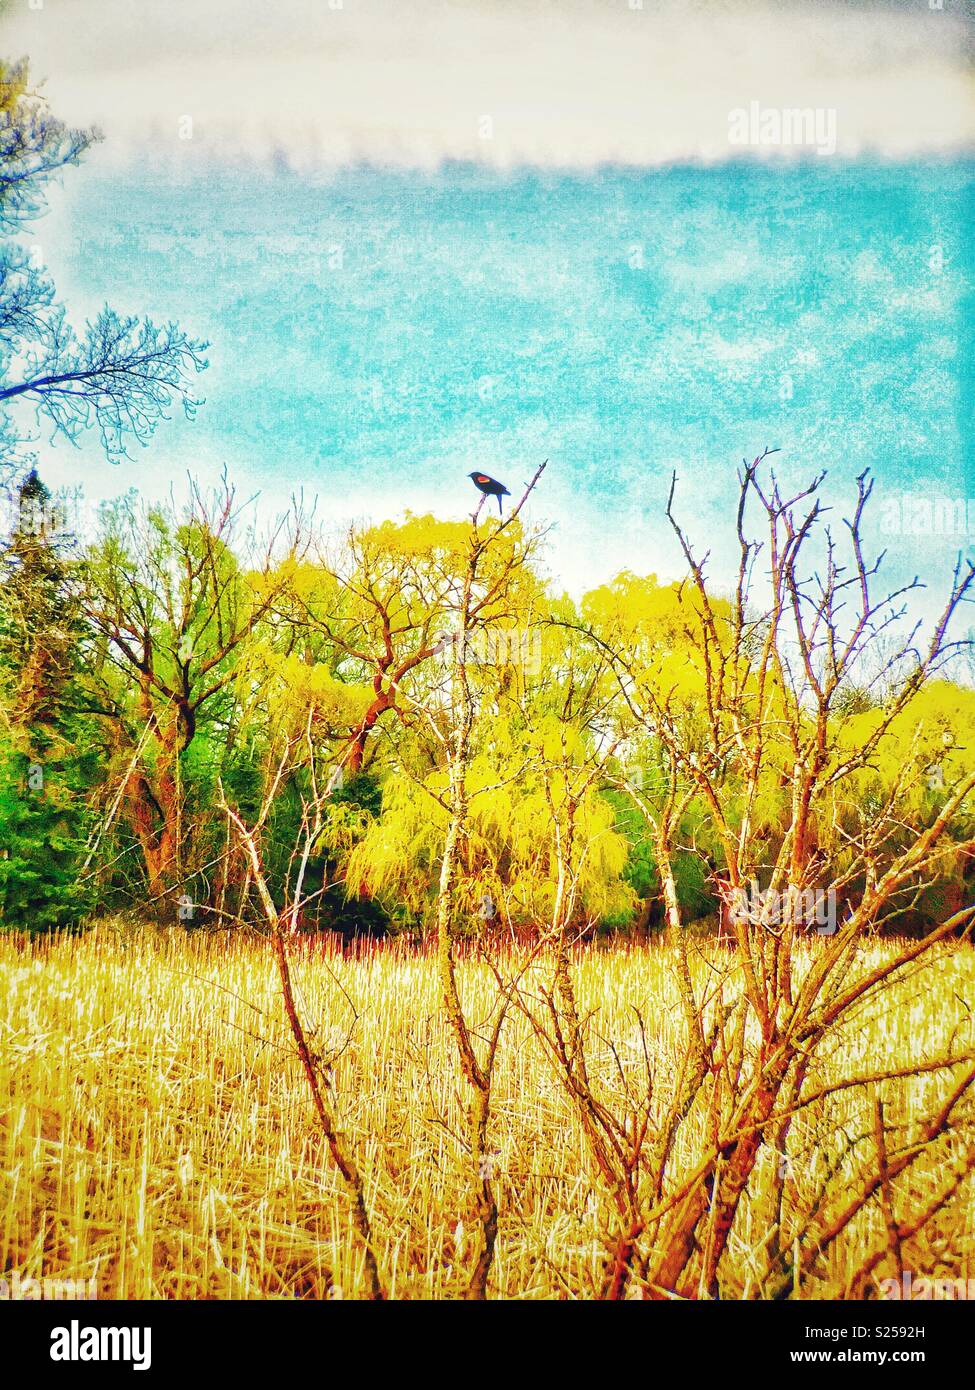 Red-winged blackbird encaramado en el árbol muerto en Marsh Foto de stock